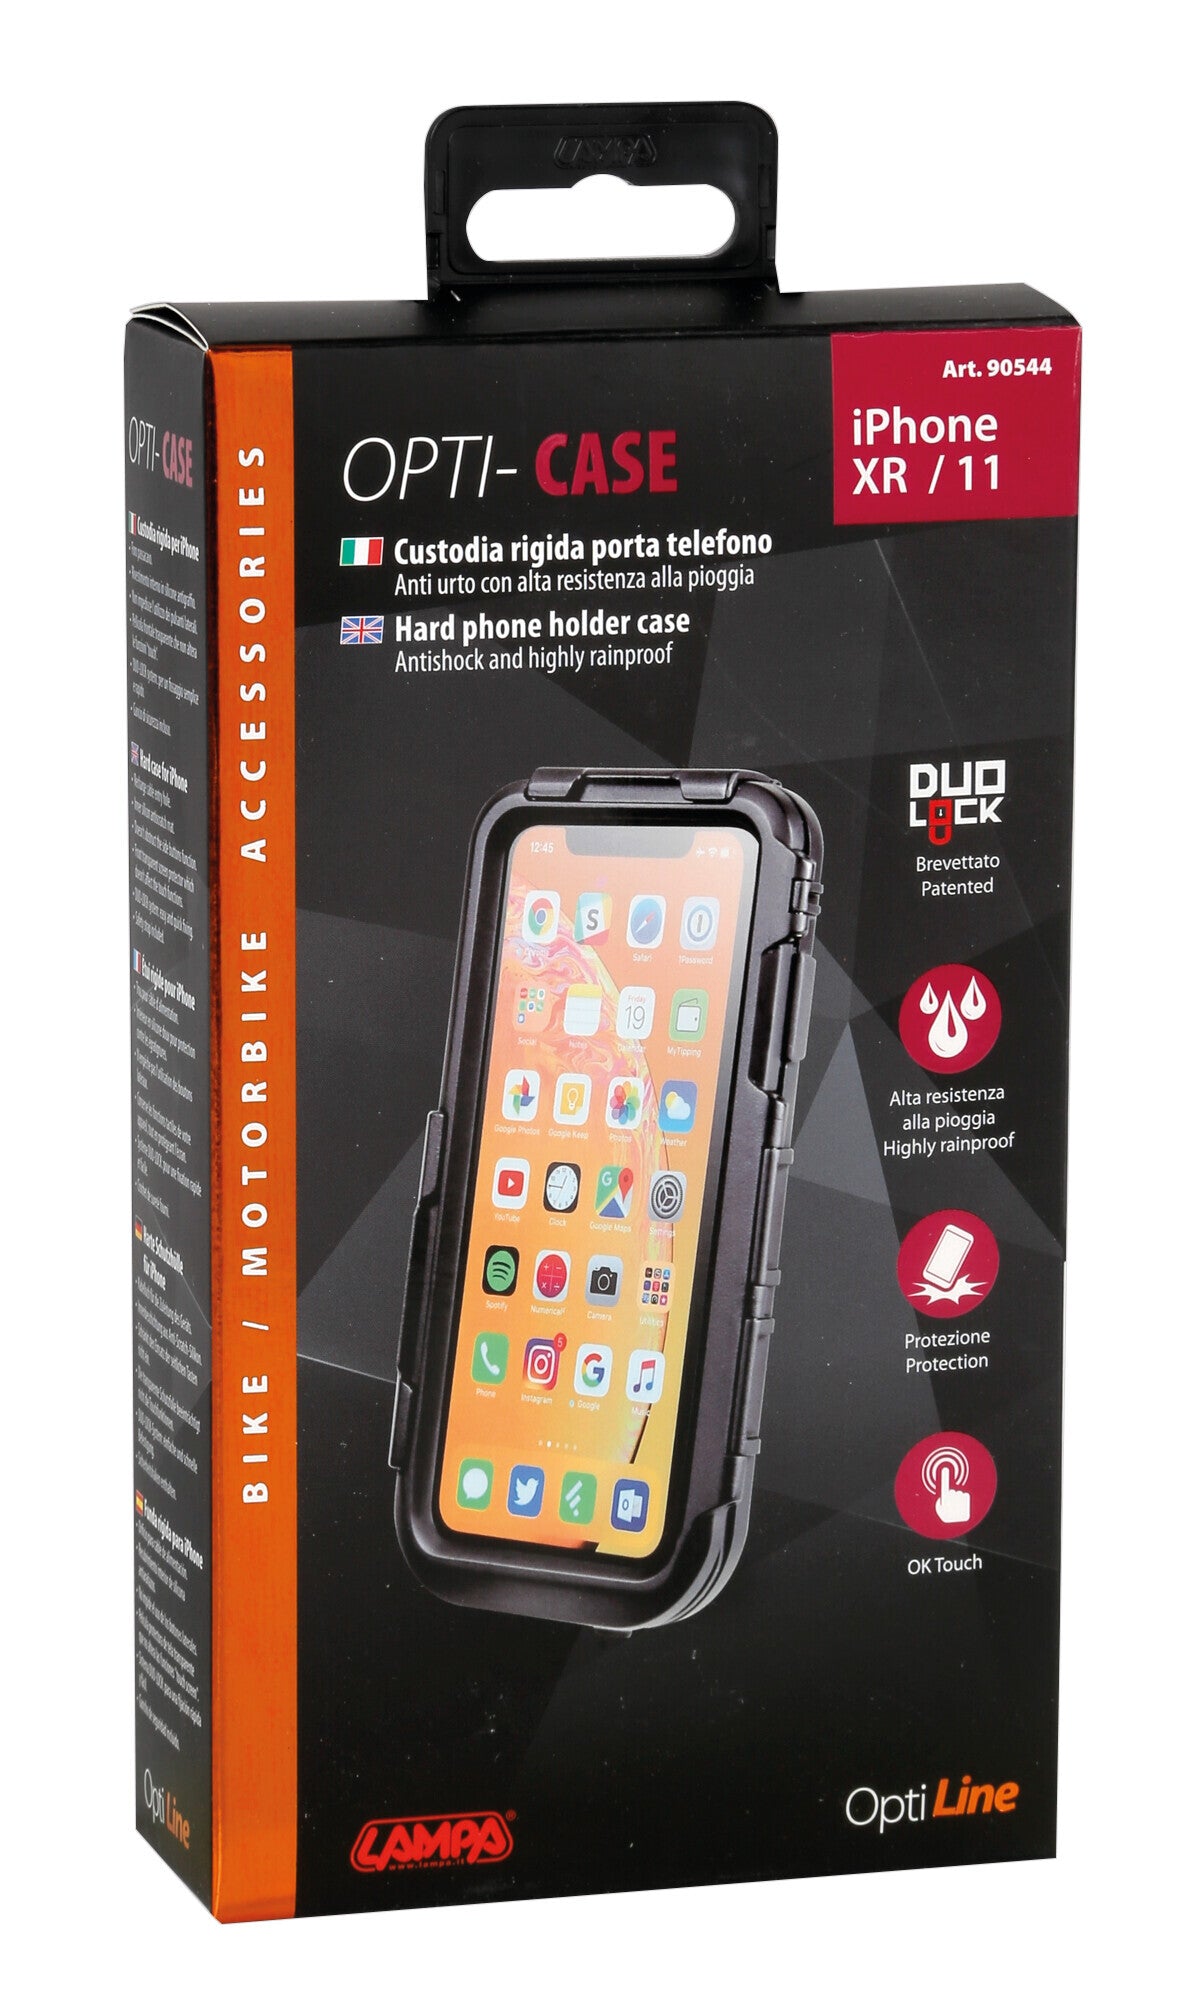 Opti Case, custodia rigida per smartphone - iPhone XR / 11